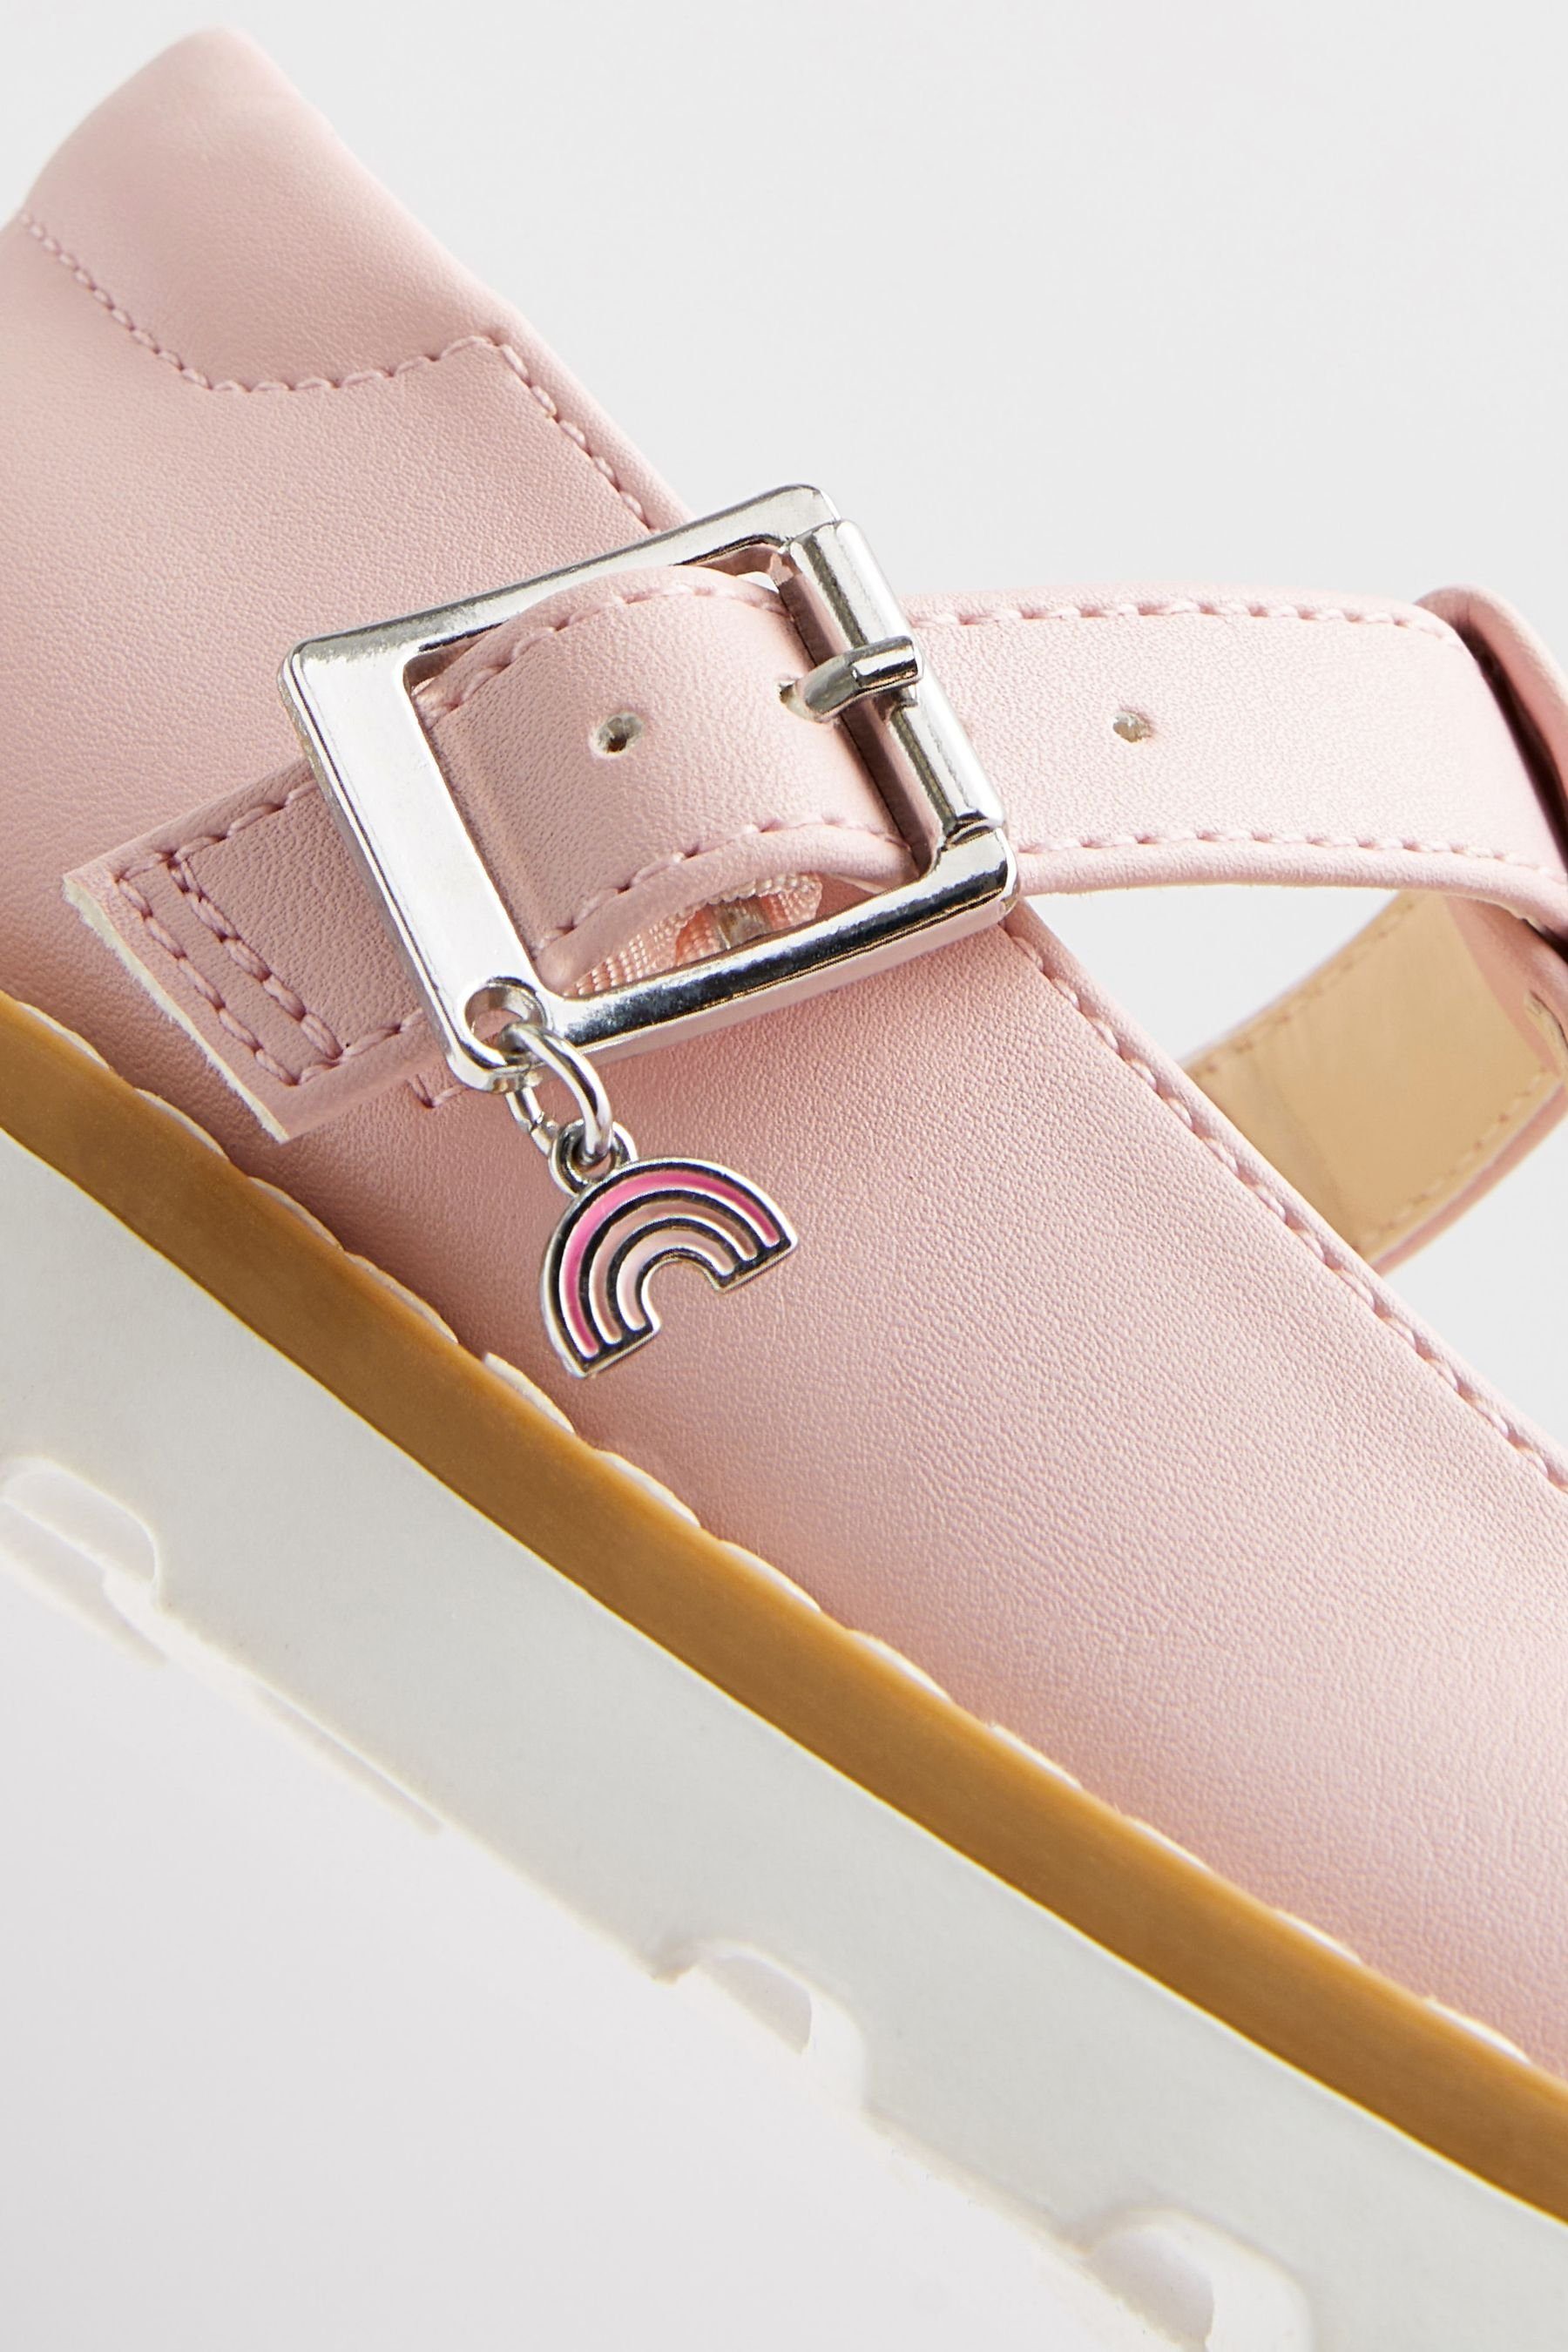 Next T-Steg-Schuhe, weite Pink (1-tlg) Passform T-Strap-Sandale